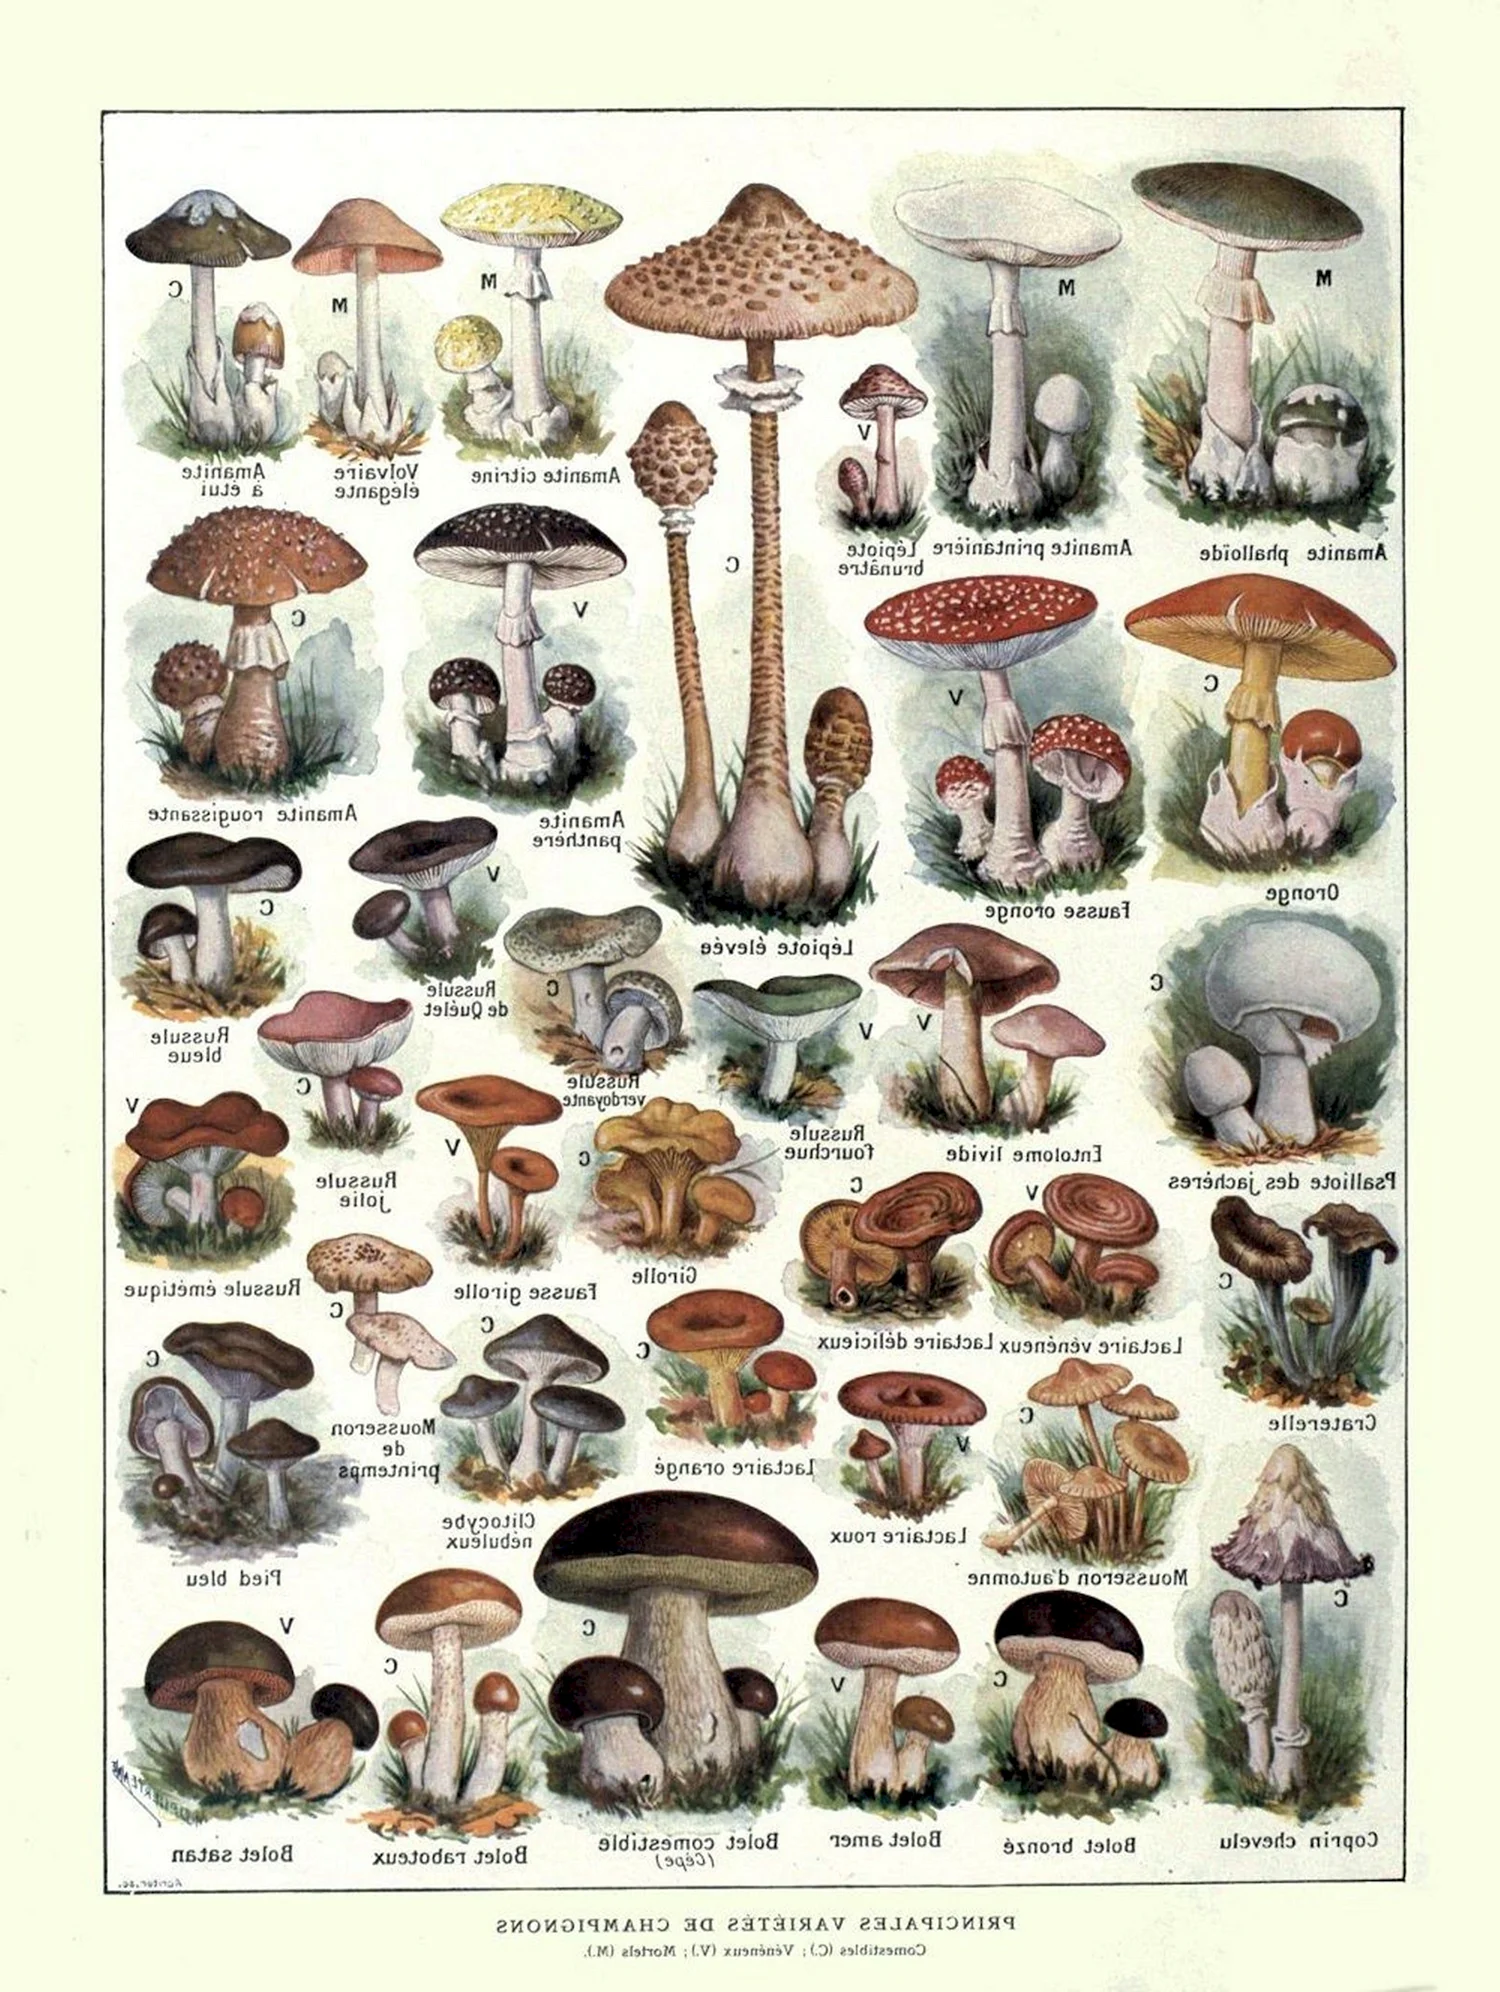 Название съедобных и несъедобных грибов